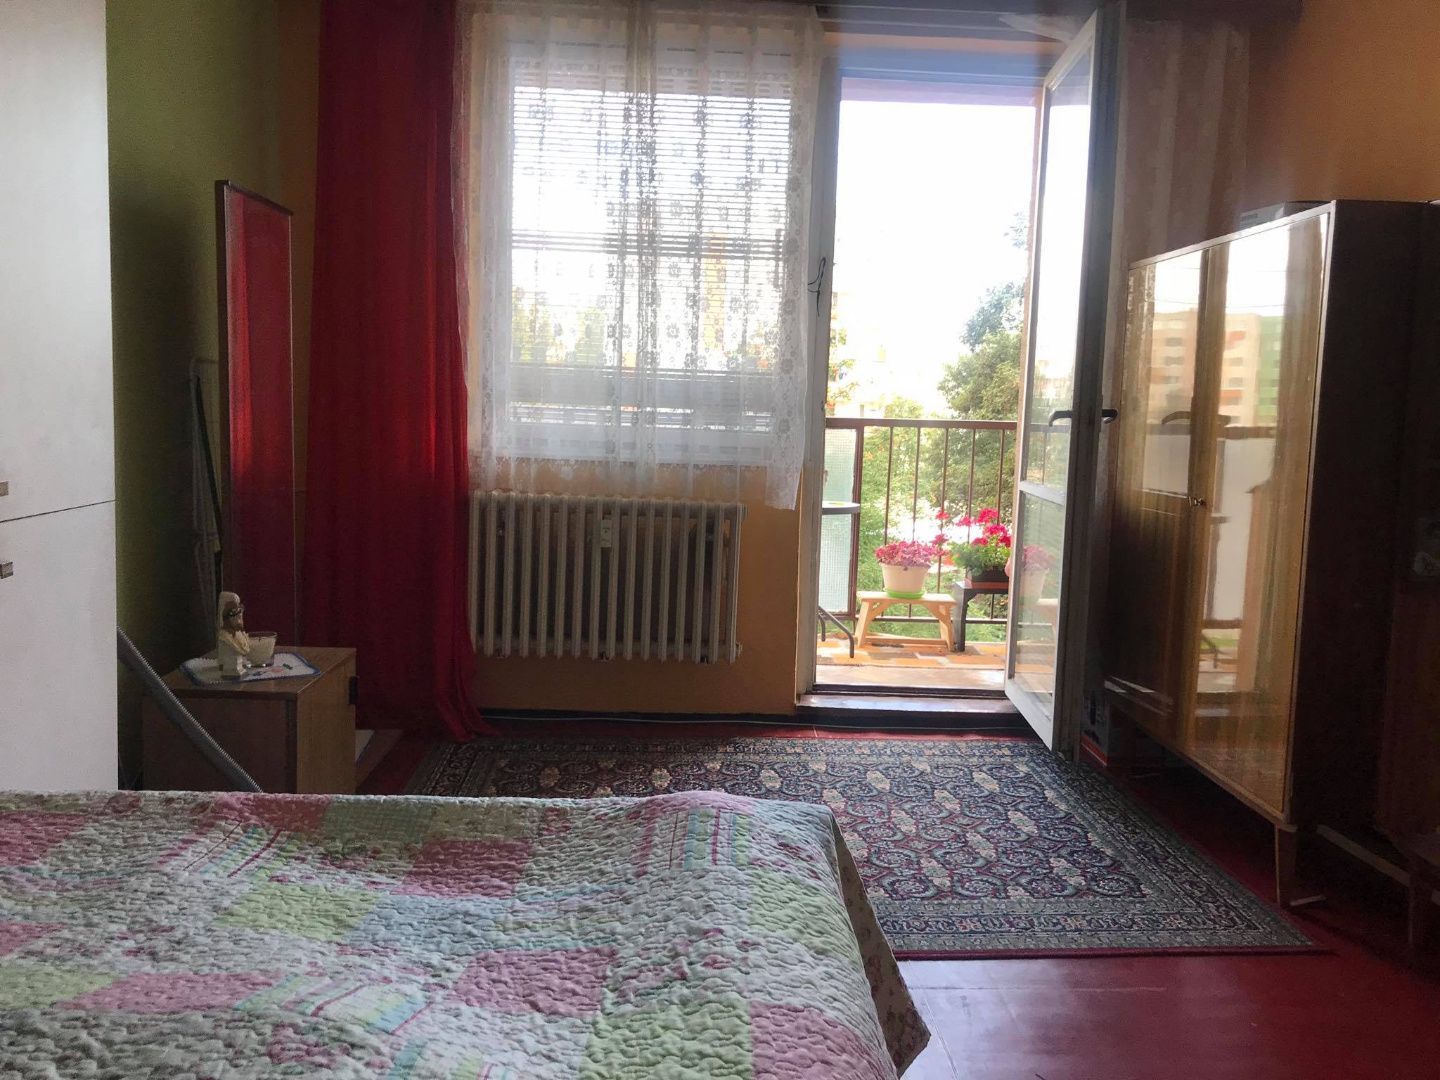 DELTA - Slnečný 3-izbový byt s loggiou na predaj Sp.Nová Ves - Mier